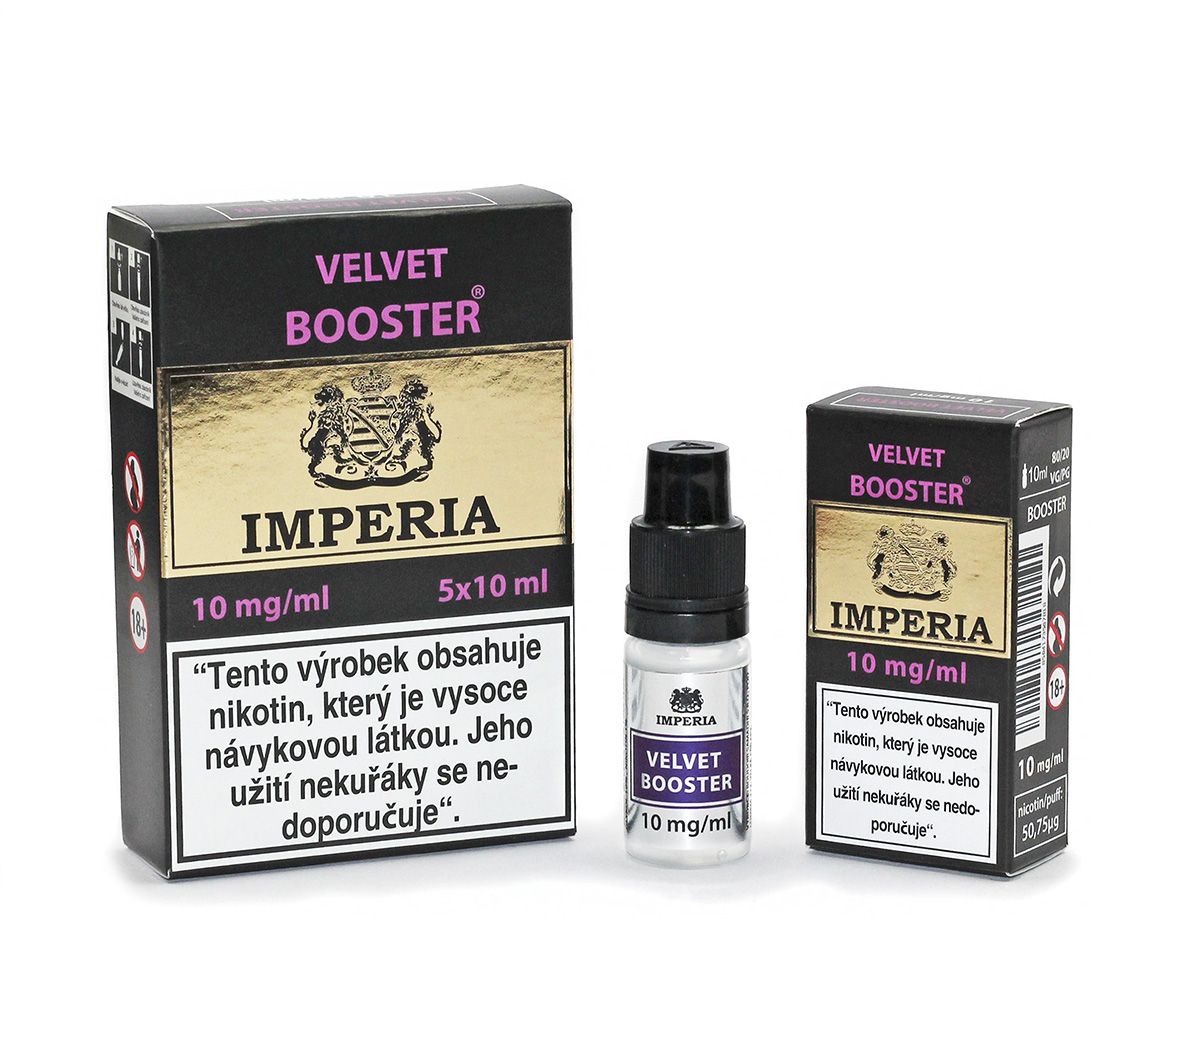 IMPERIA Velvet Booster 10mg - 5x10ml (20PG/80VG)